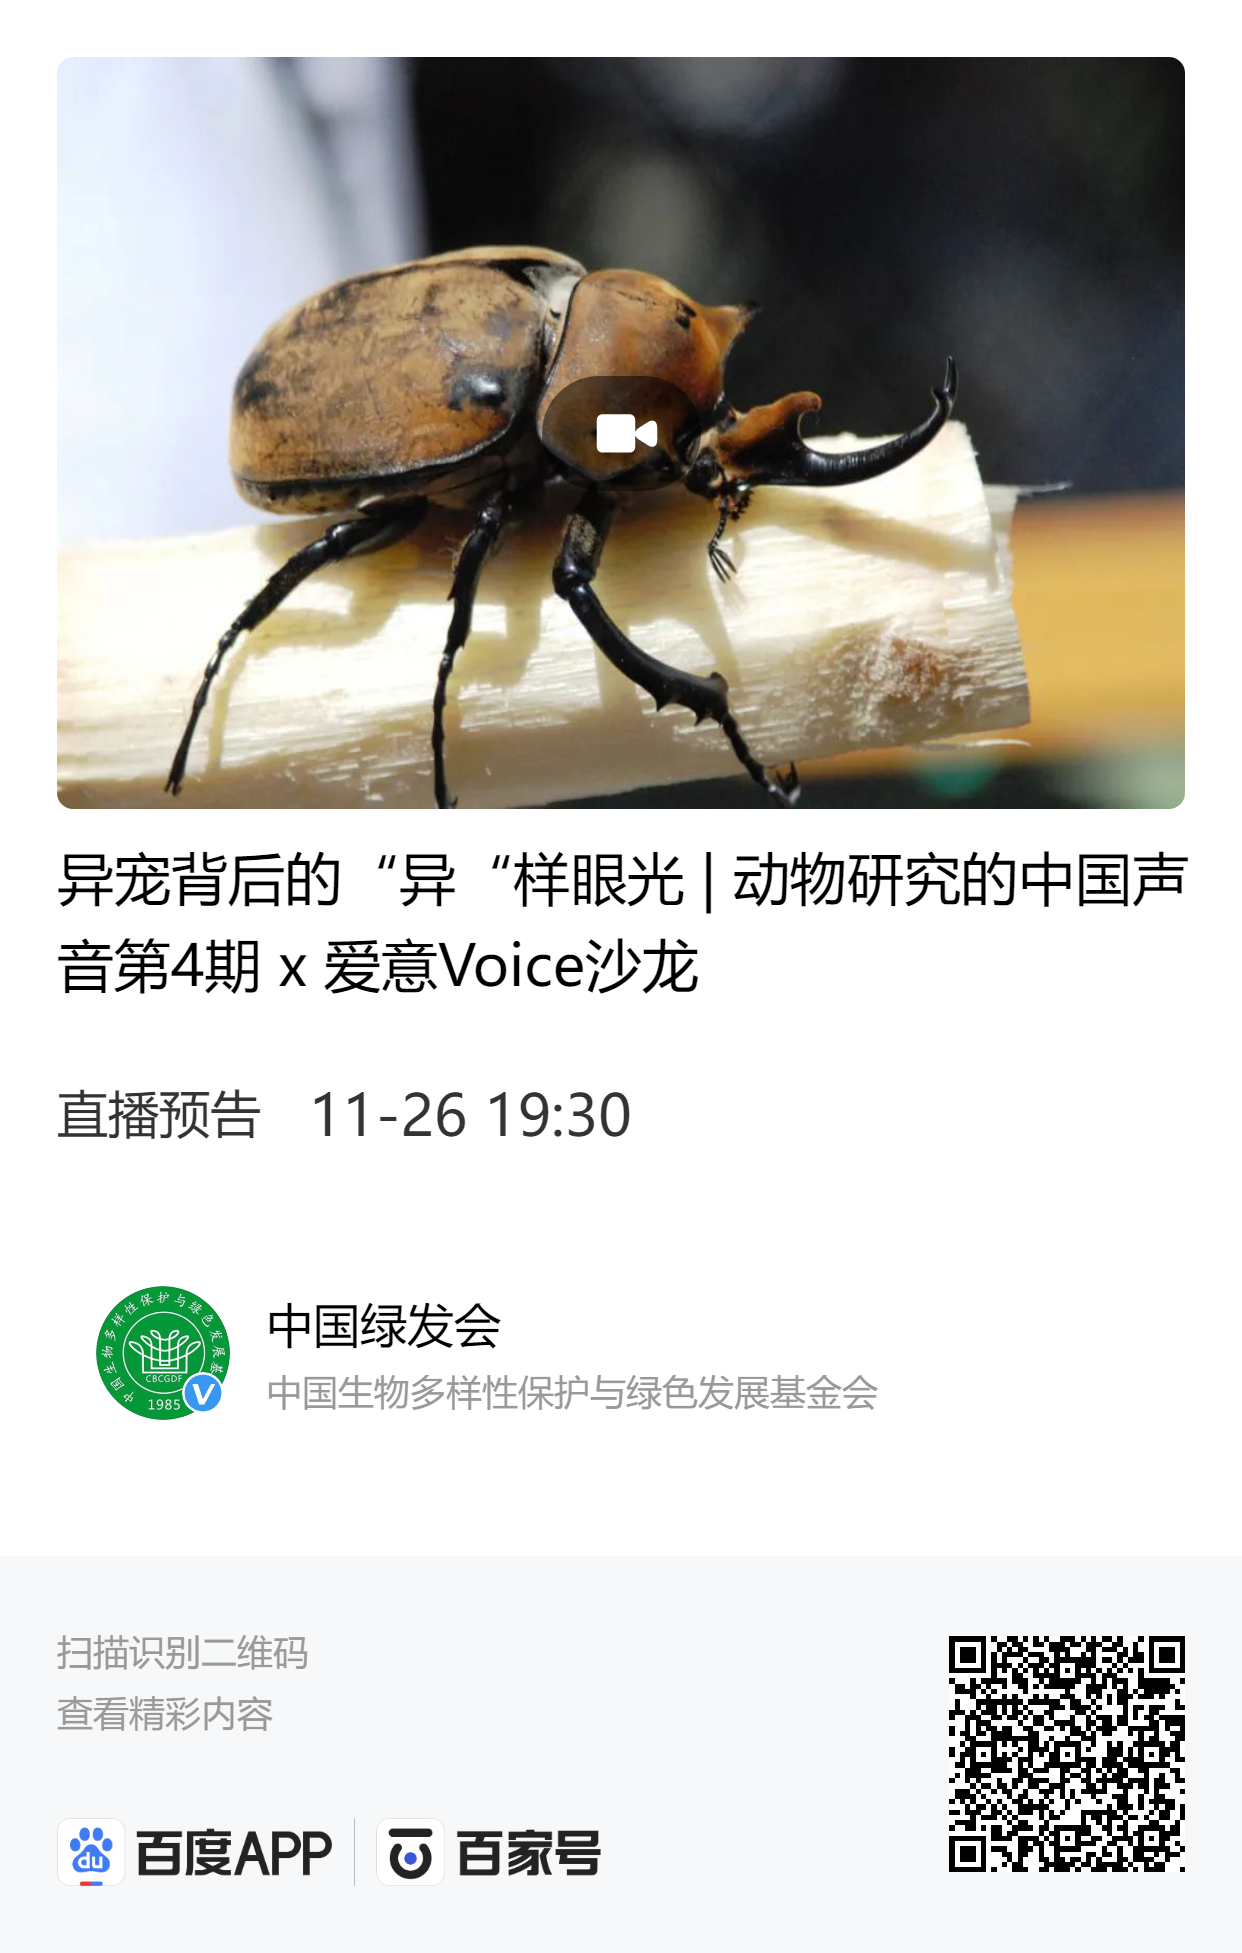 异宠背后的“异“样眼光-动物研究的中国声音第4期 x 爱意Voice沙龙.png